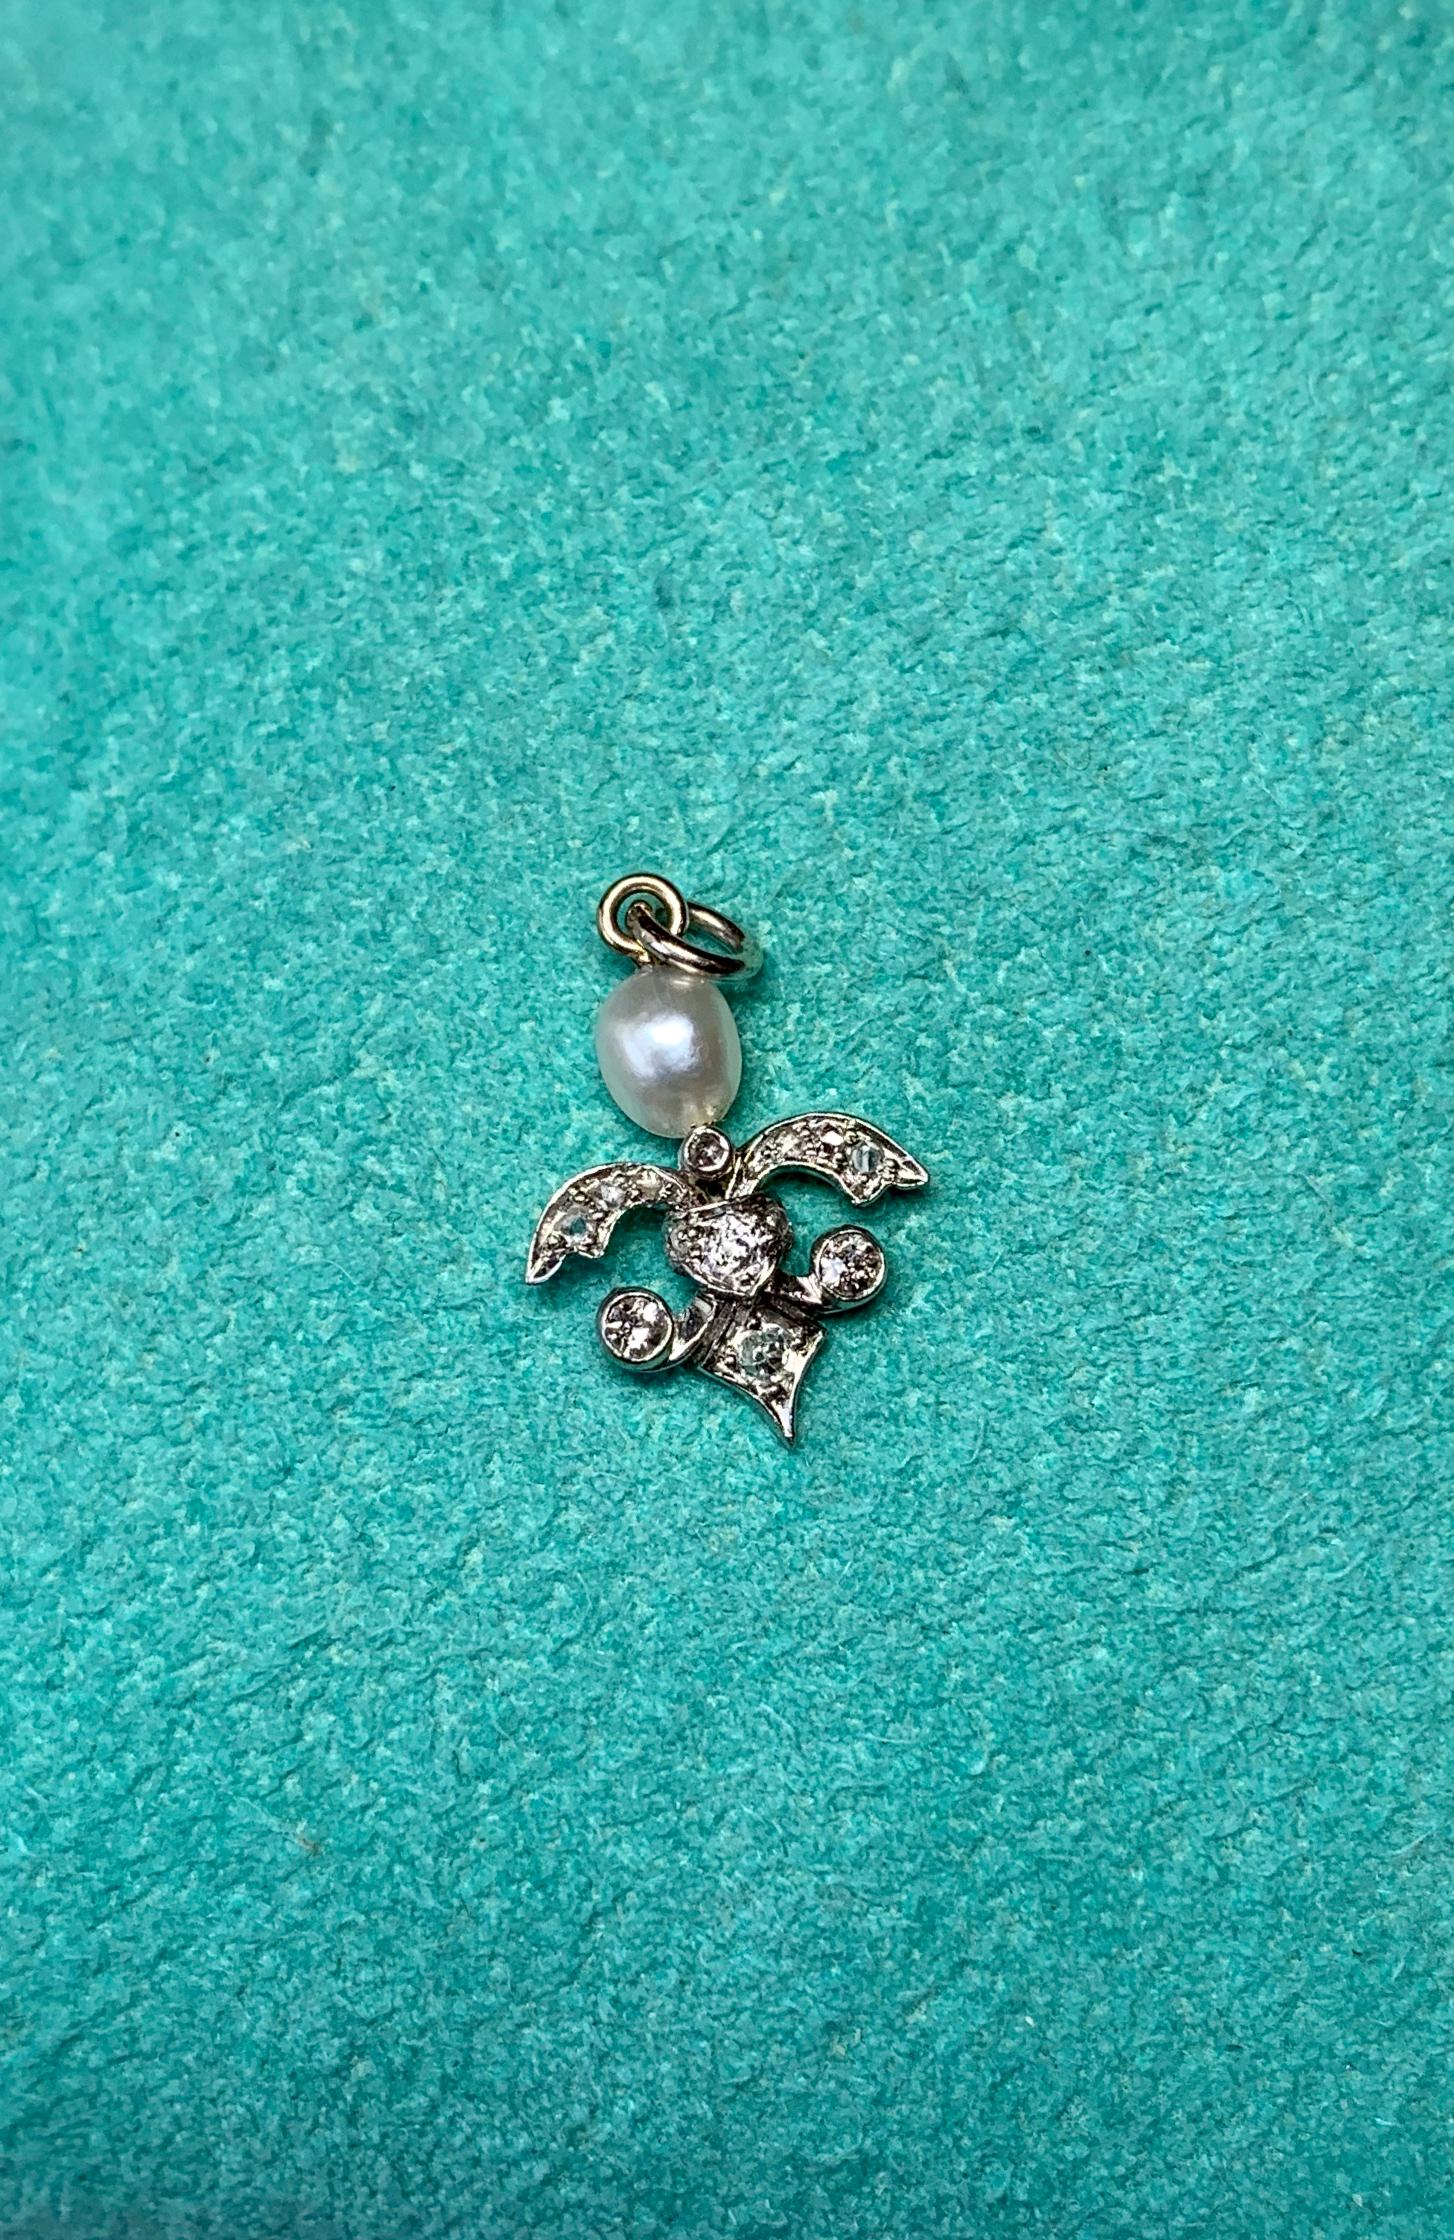 Antique Rose Cut Diamond Pearl Pendant Necklace Art Deco 14 Karat White Gold 1